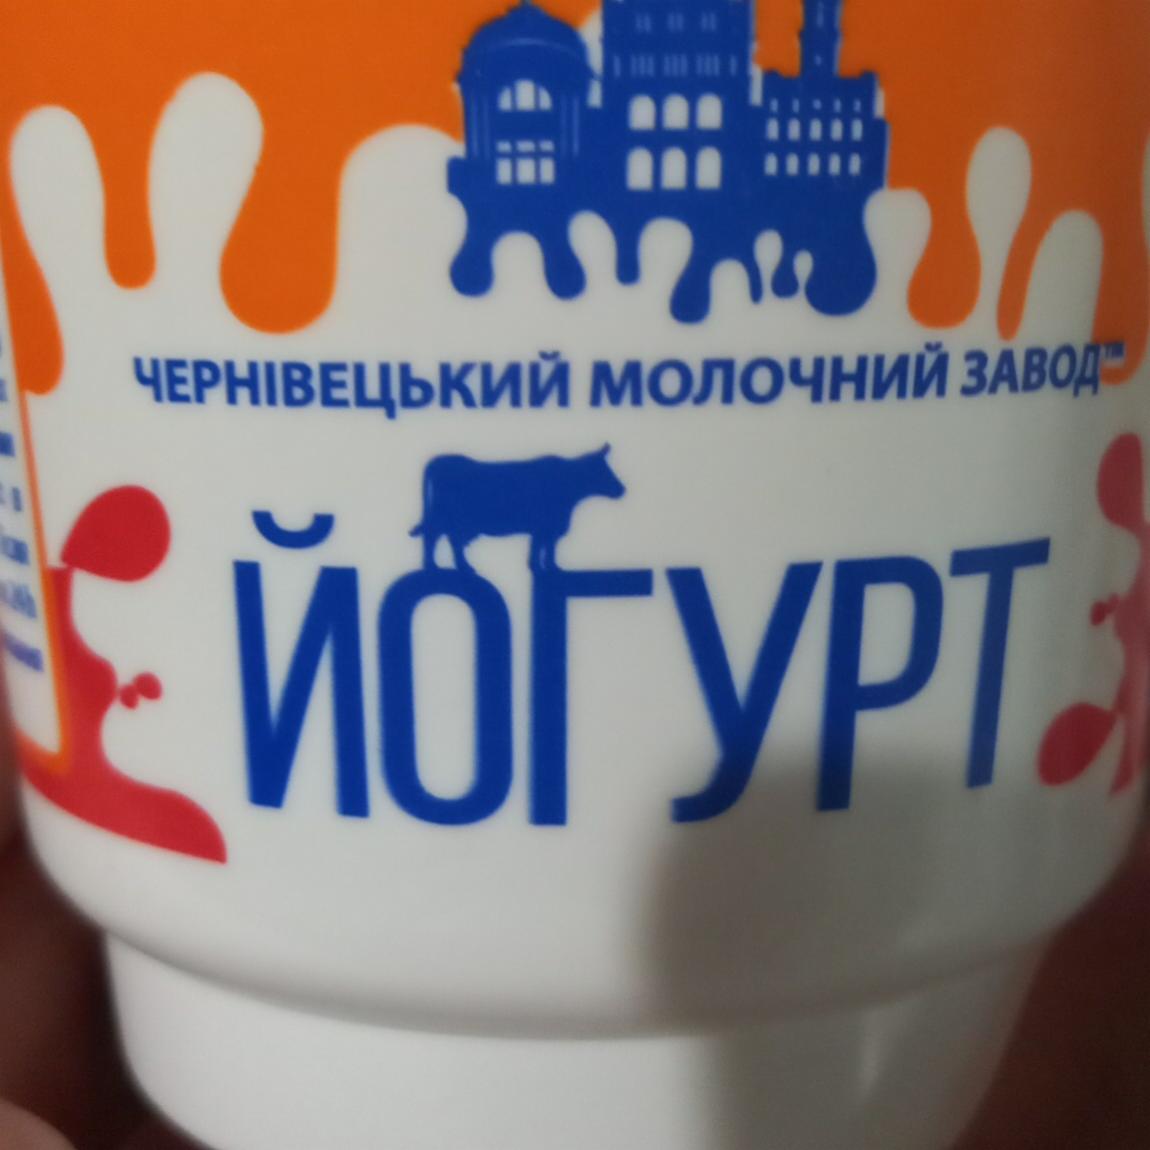 Фото - Йогурт нежирный Черновицкий молочный завод